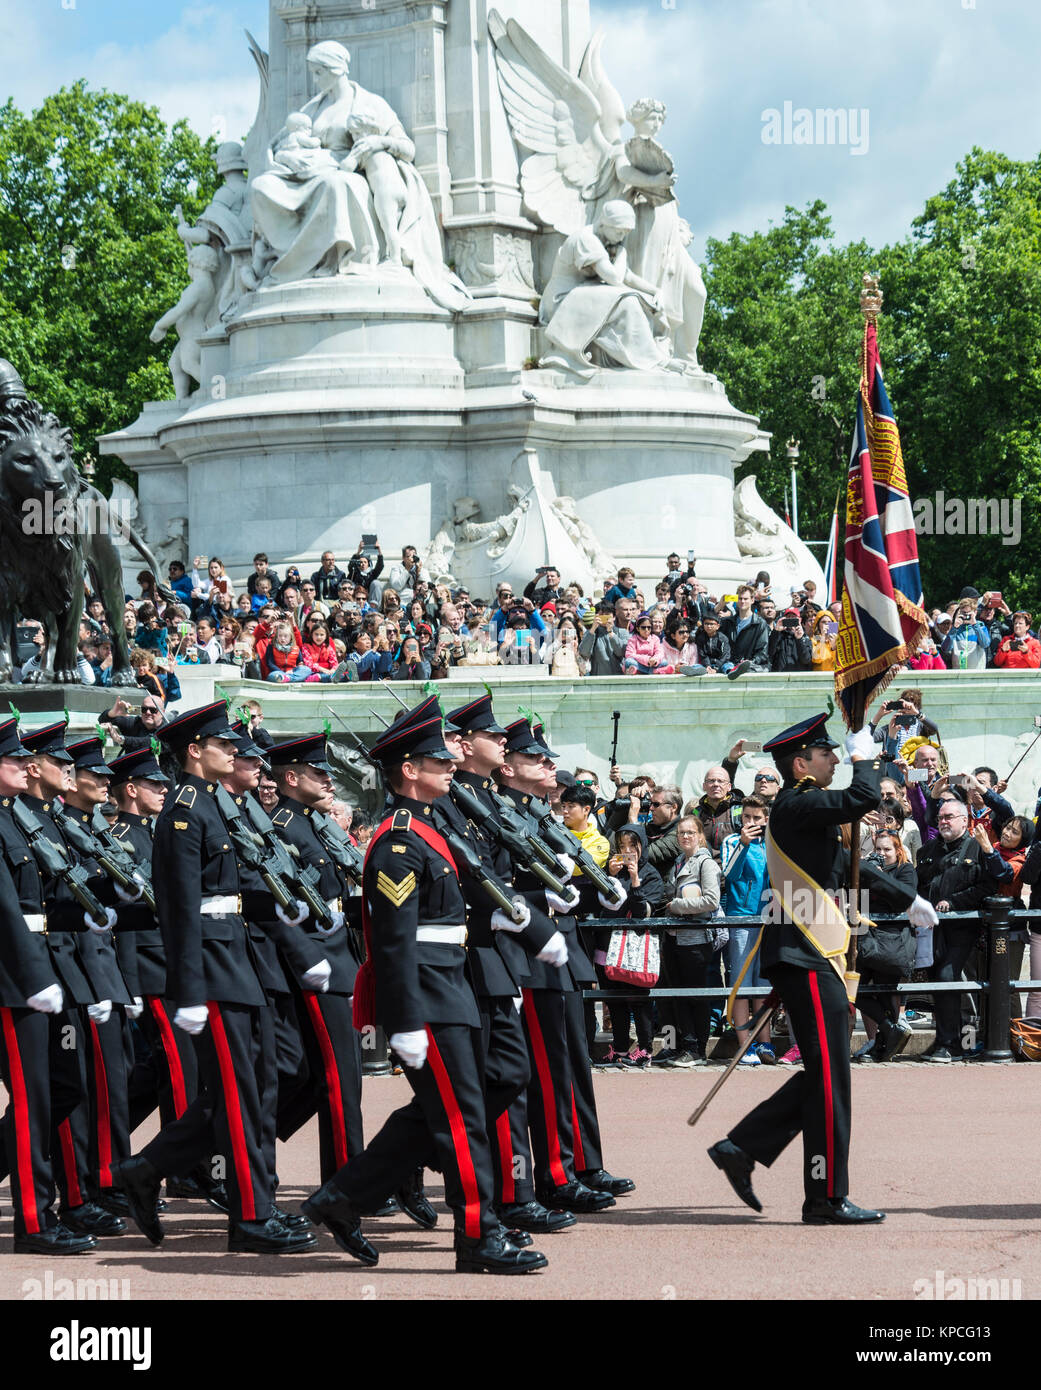 El desfile de la Guardia Real, el cambio de guardia, Tradicional cambiando, el Palacio de Buckingham, Londres, Inglaterra, Gran Bretaña Foto de stock